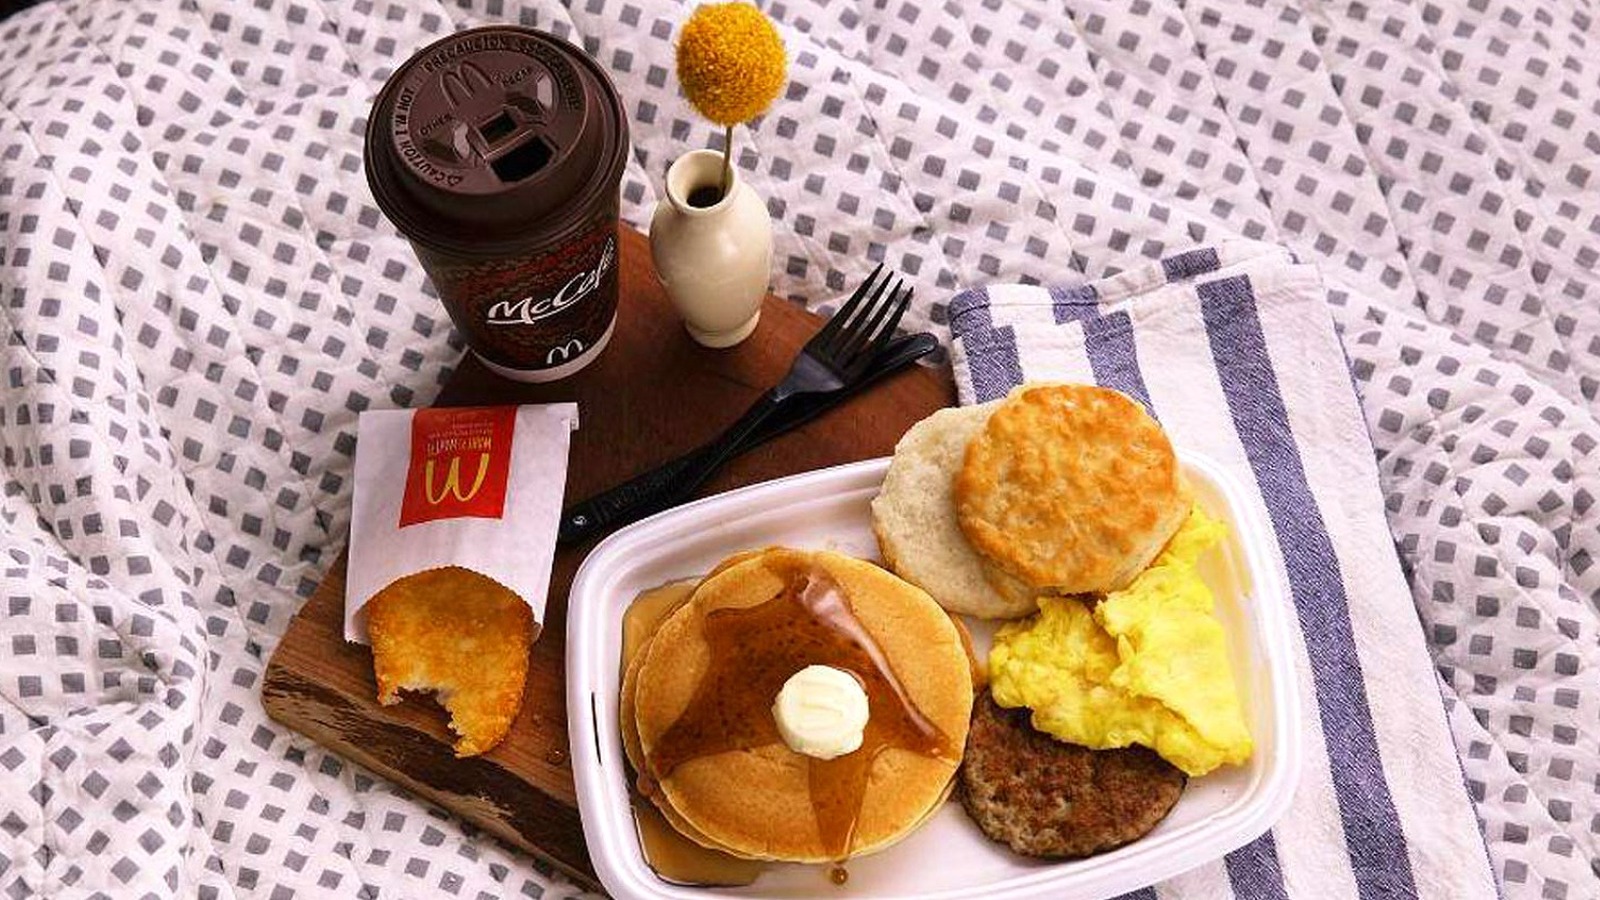 Вкусно и точка завтрак время до скольки. Макдональдс Брекфаст. MCDONALD'S Завтраки. МАКЗАВТРАК. Завтрак из Макдональдса.